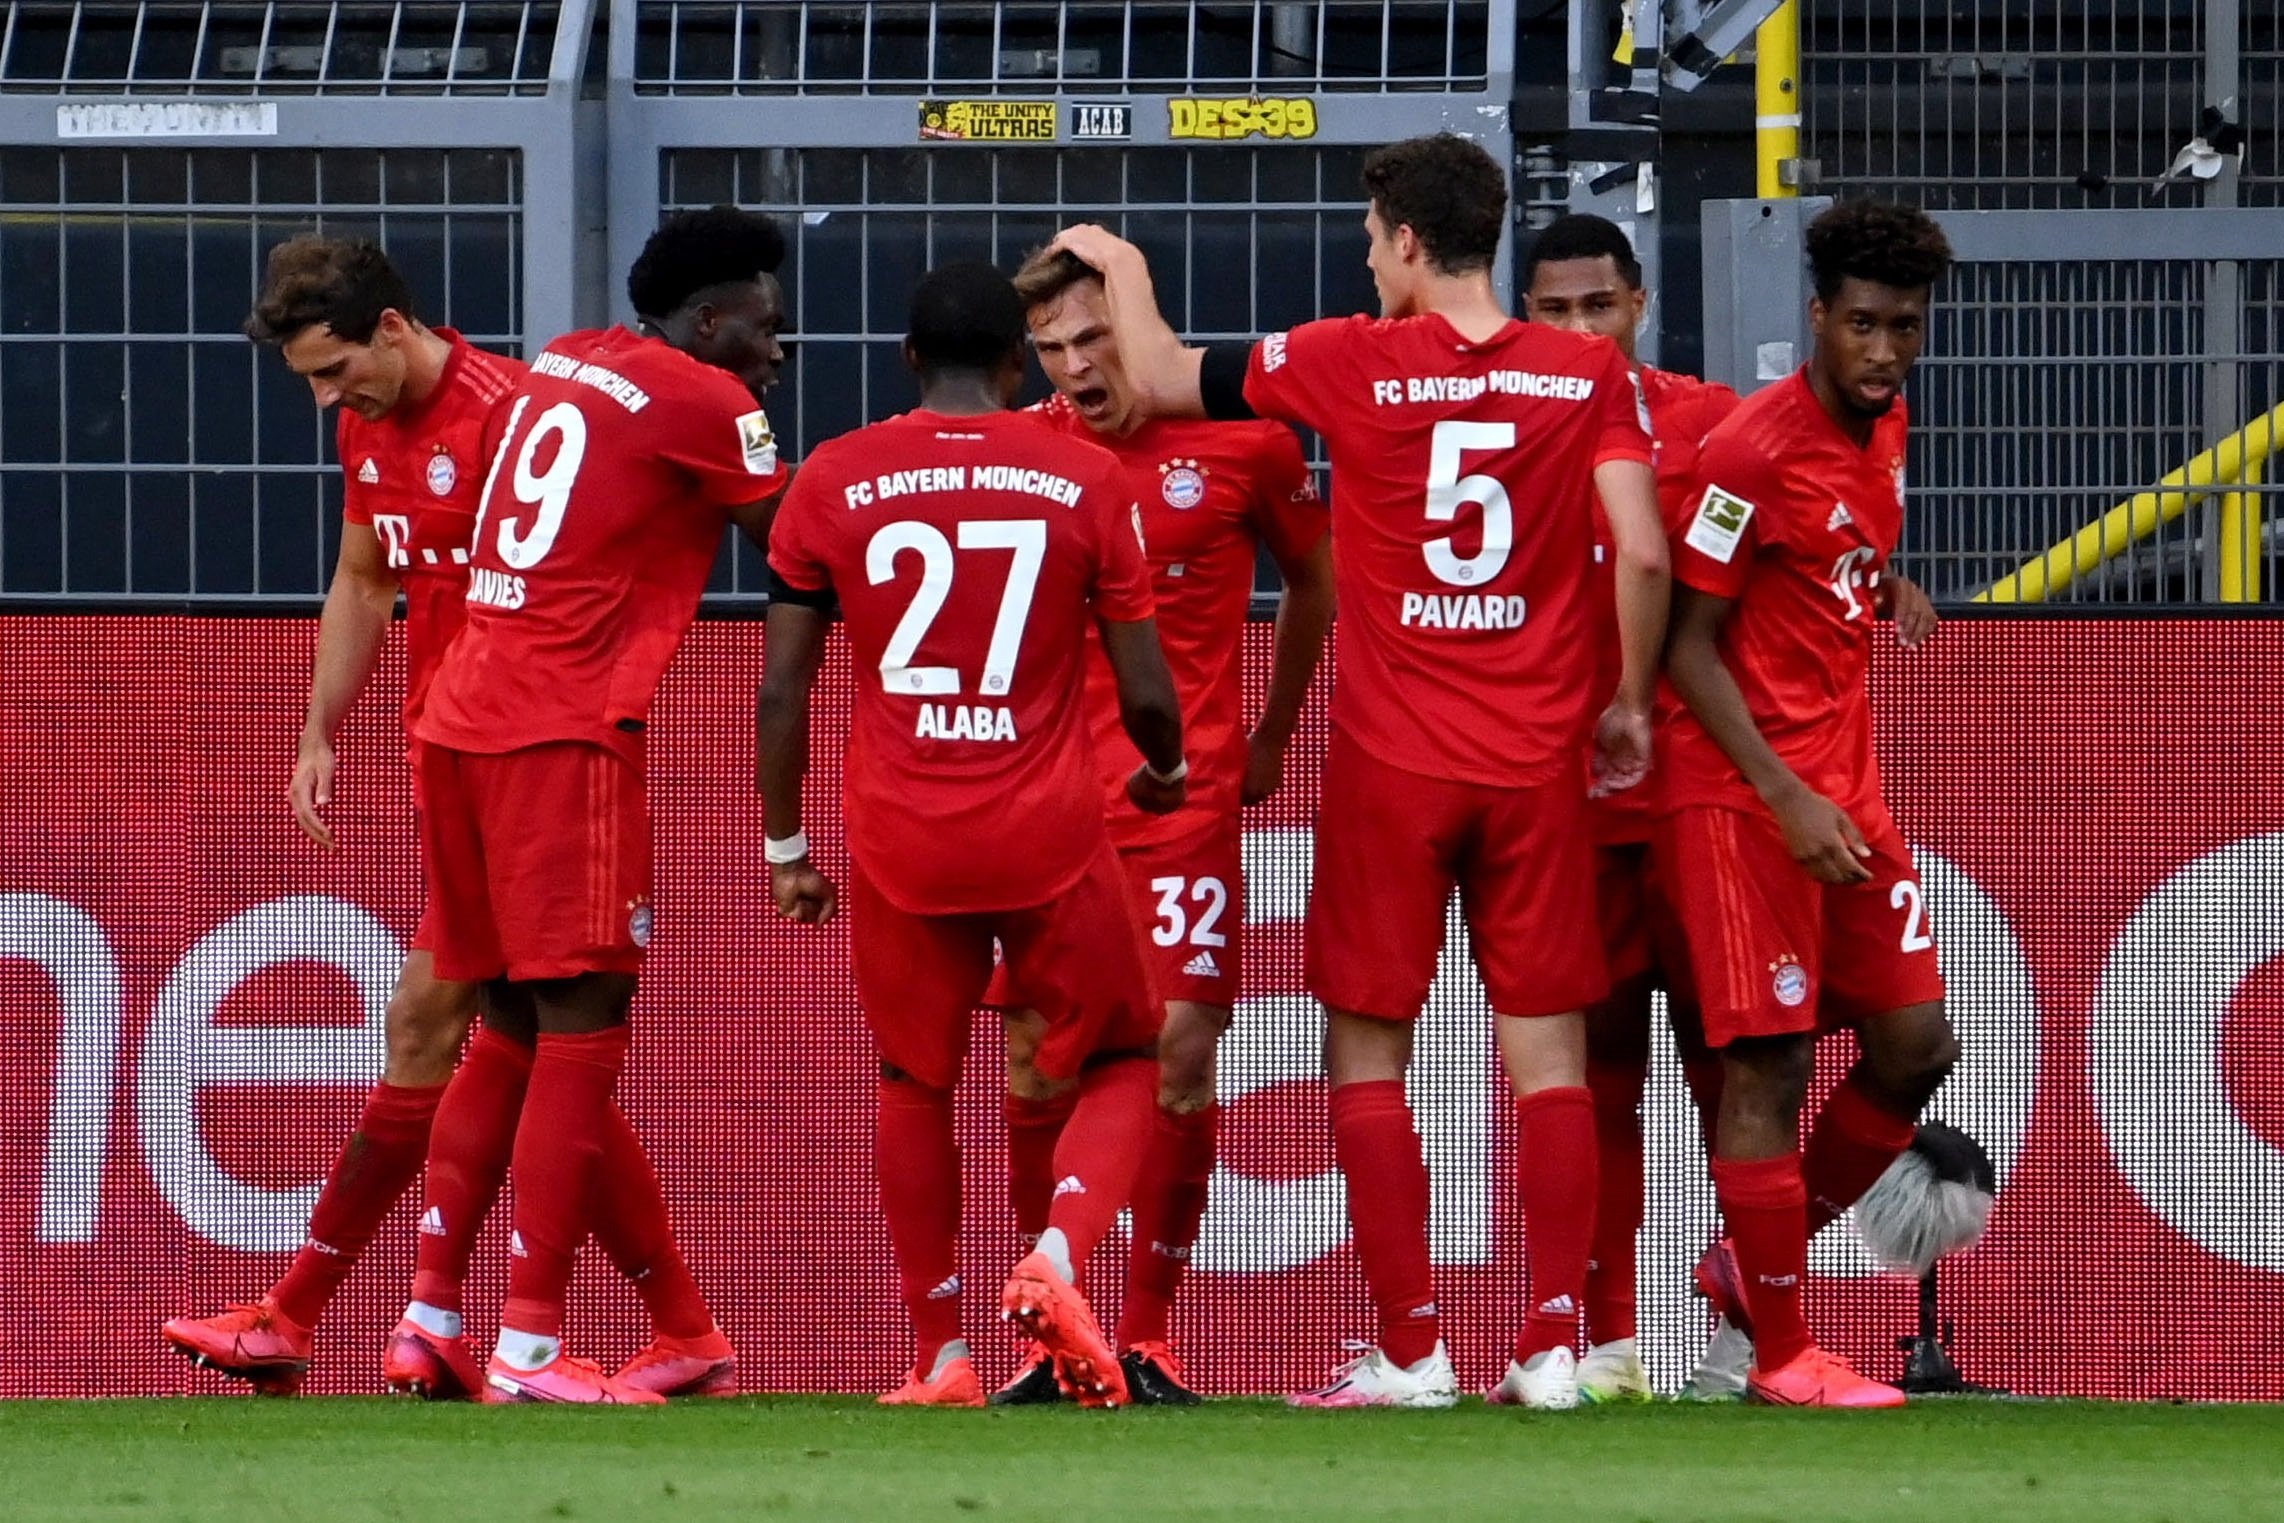 El Bayern se impone al Dortmund y encarrila la Bundesliga (0-1)